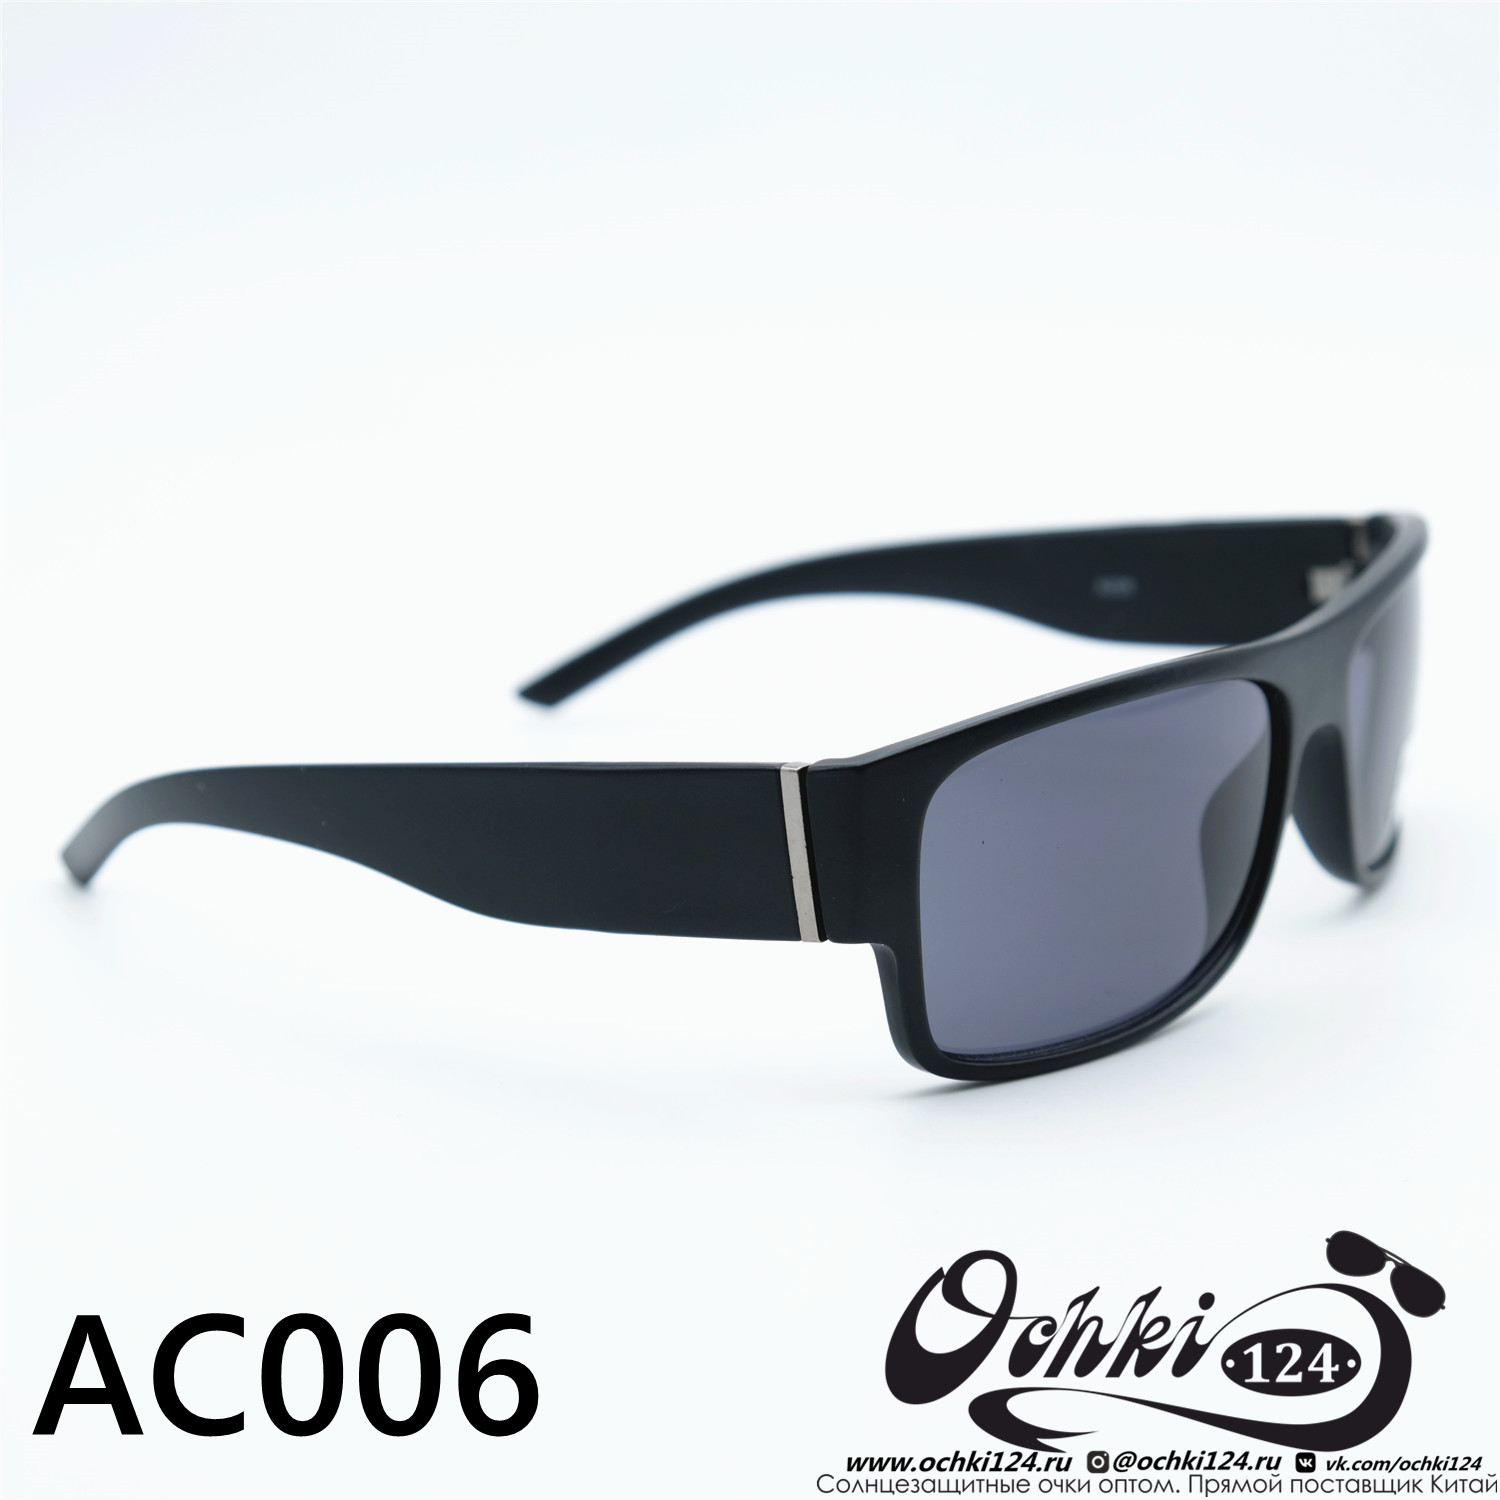  Солнцезащитные очки картинка 2023 Мужские Квадратные MATRIUXT AC006-C3 